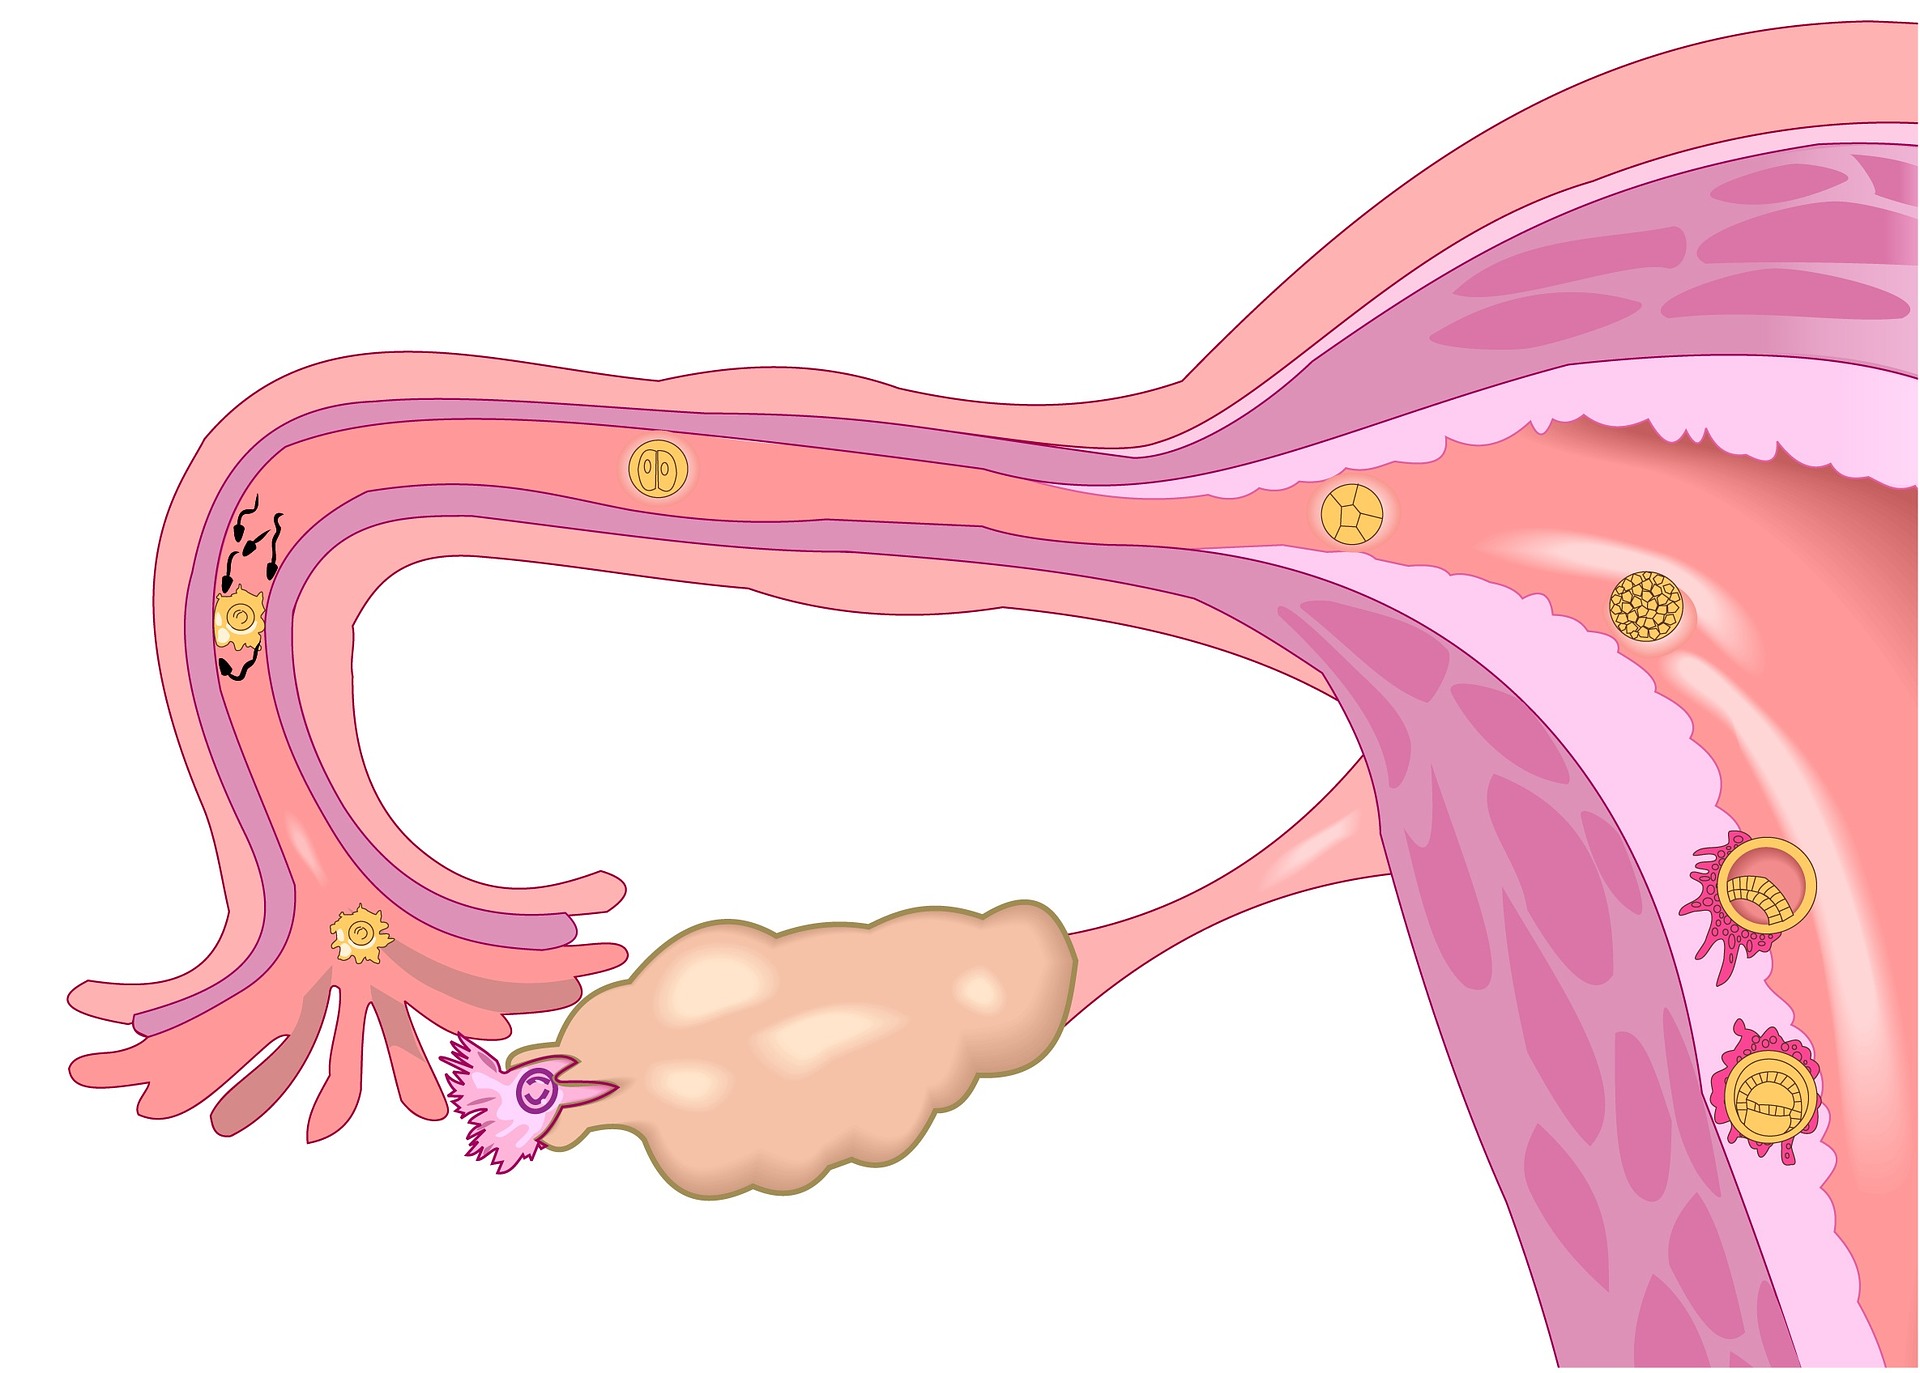 dibujo de la anatomía del aparato genital de mujer